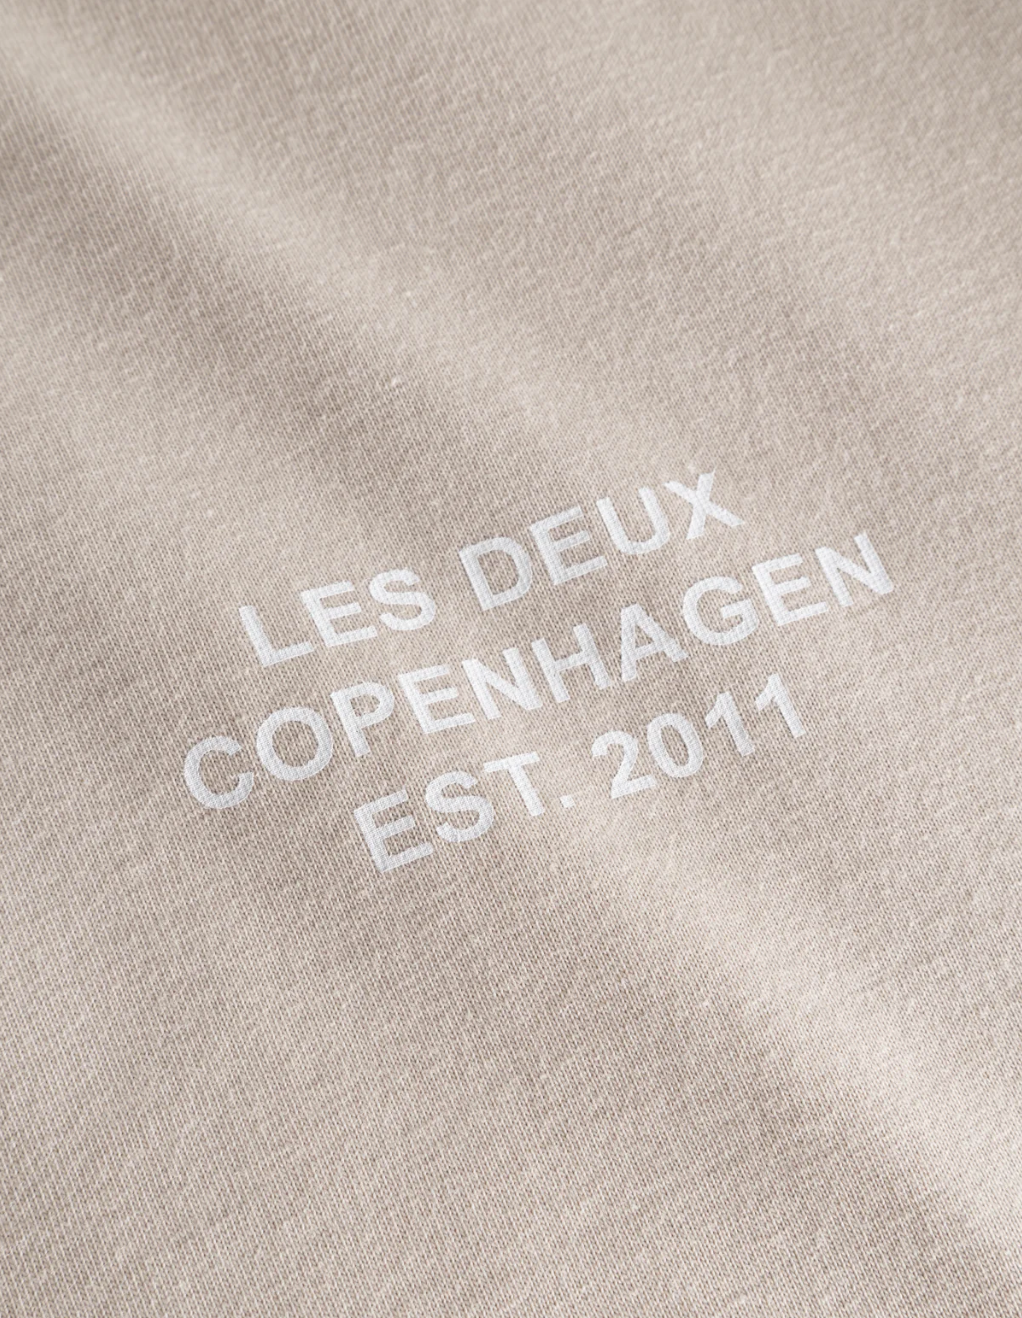 Copenhagen 2011 T-Shirt Light Desert Sand/White